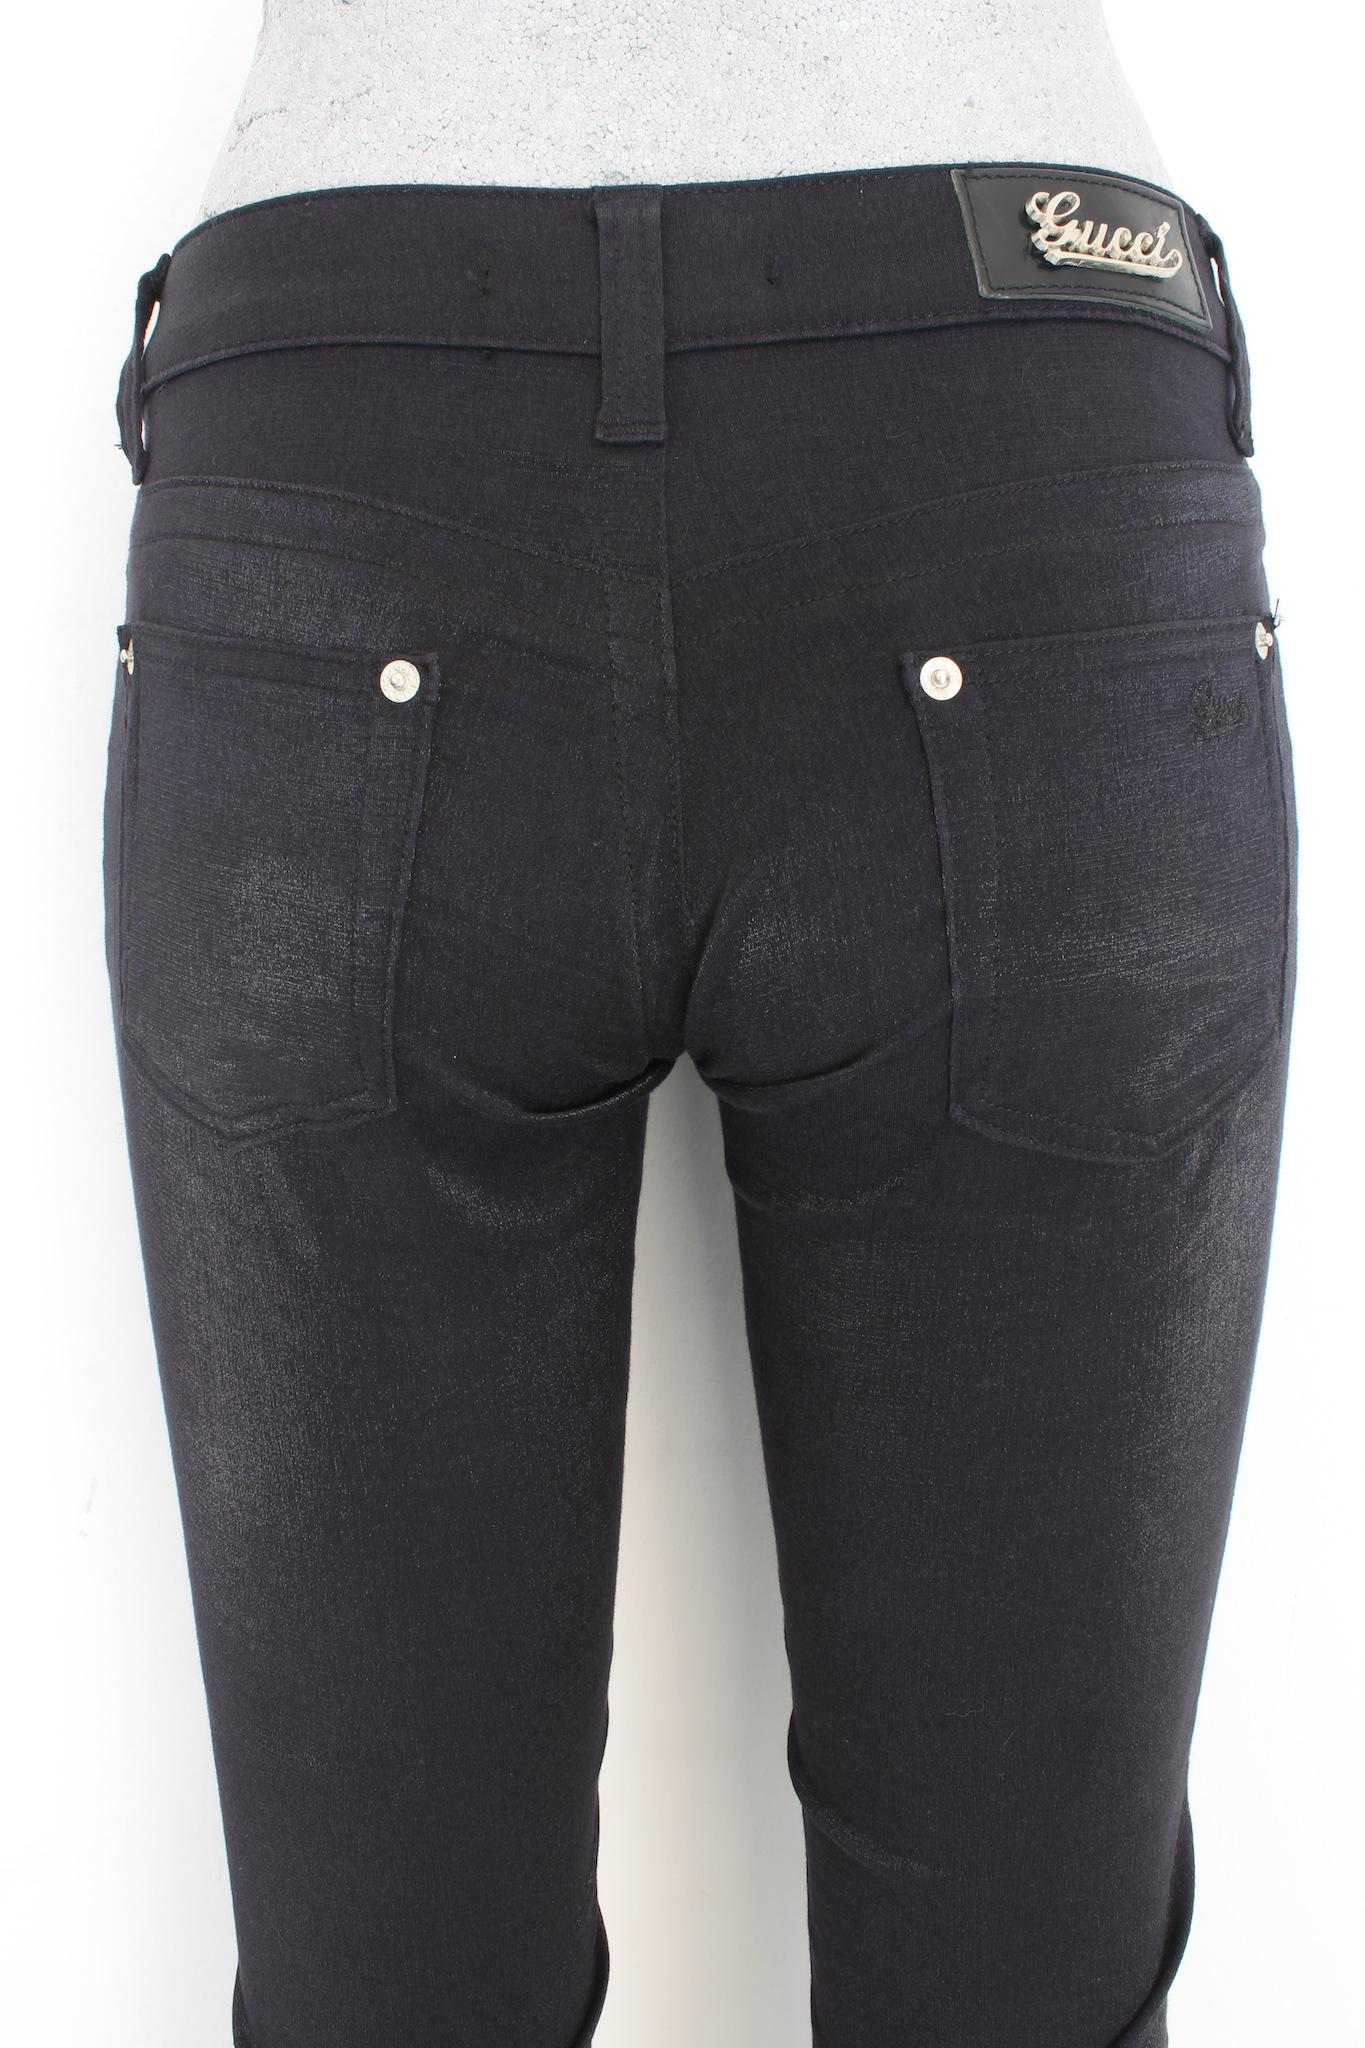 Gucci Black Pamuk Lurex Capri Jeans Pants 2000s  For Sale 1